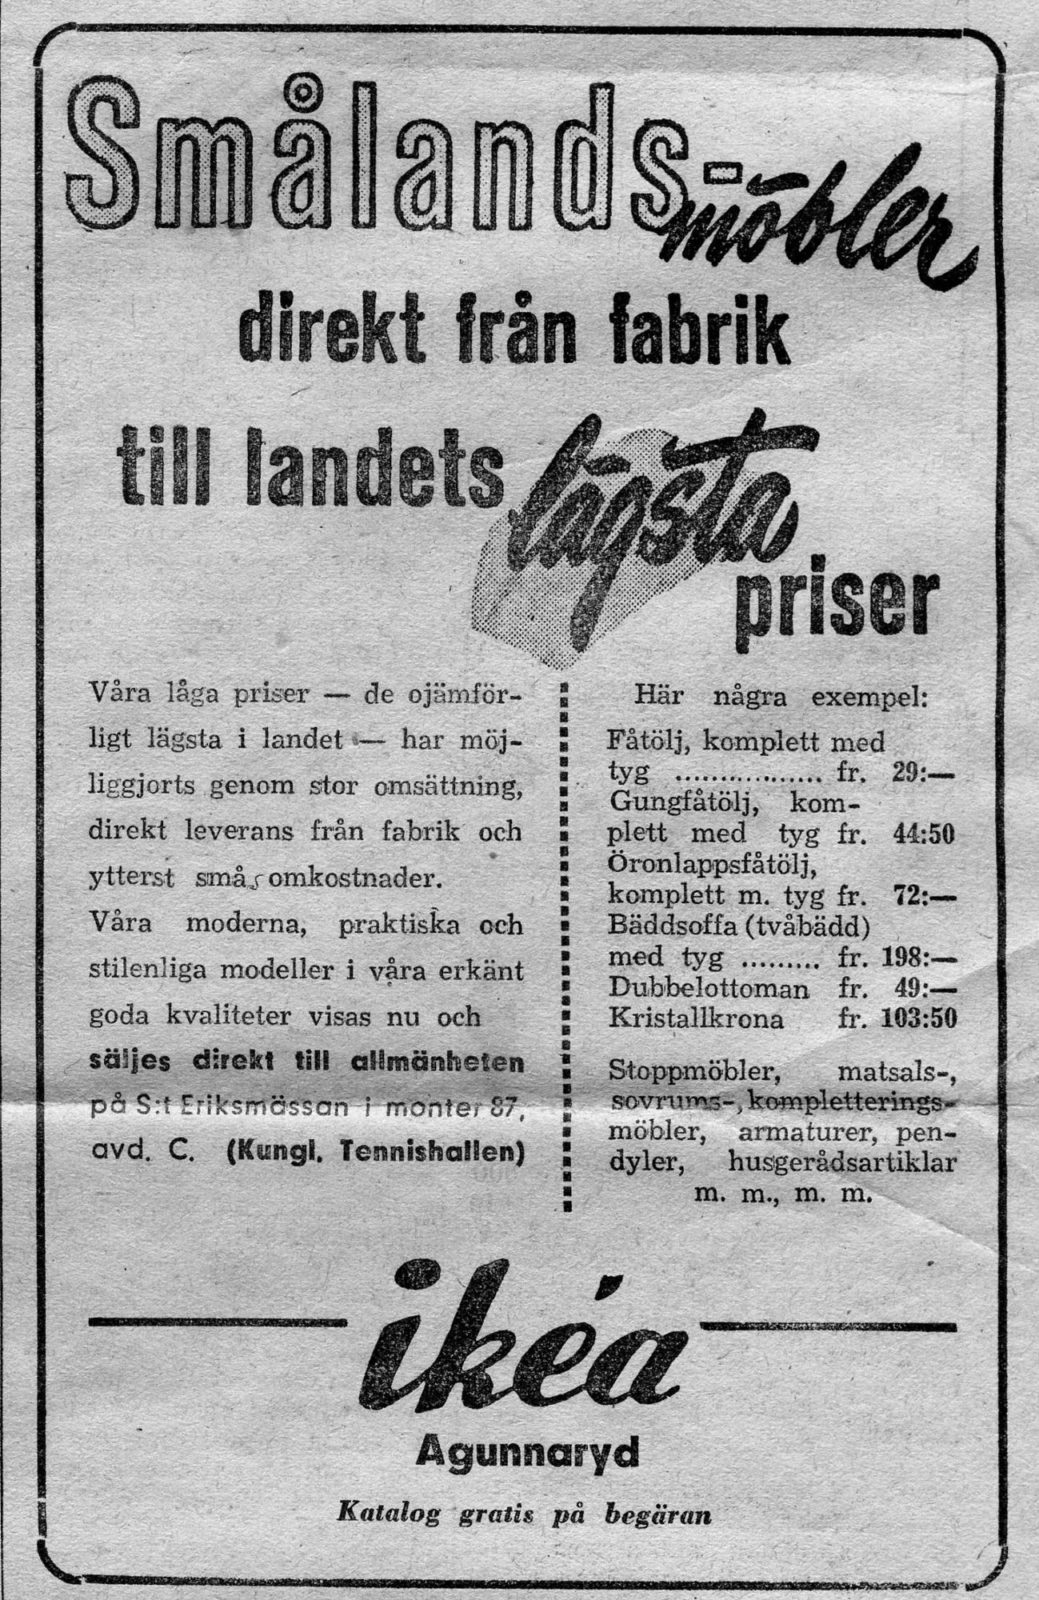 Faksimil IKEA enkelt utformad annons med enbart text i svensk tidning 1950.